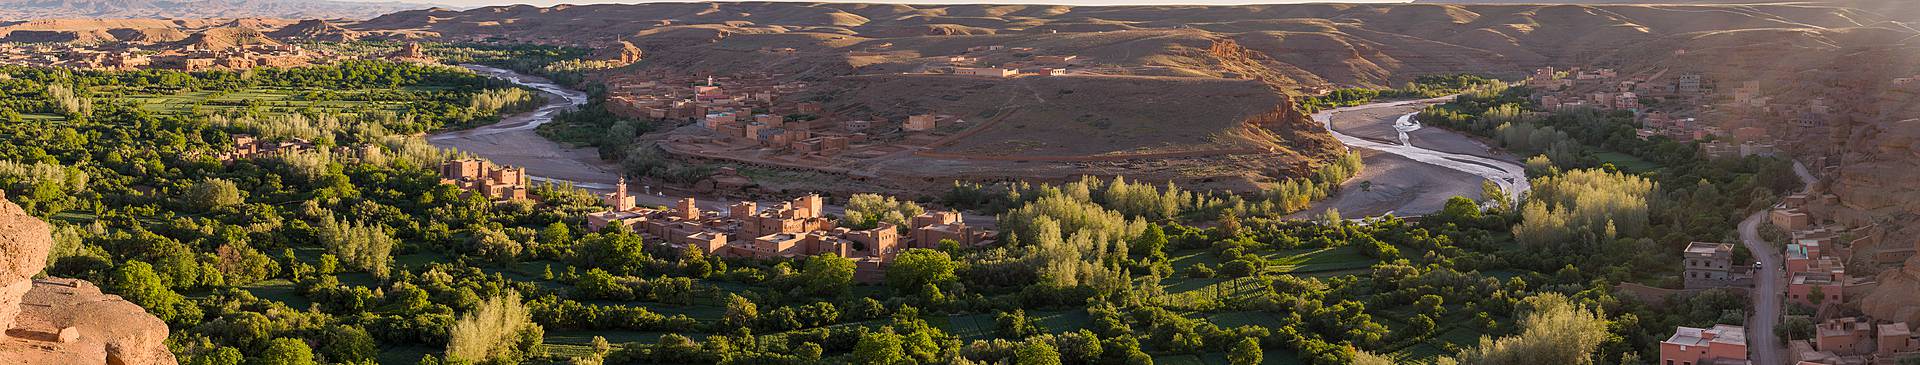 Morocco in September